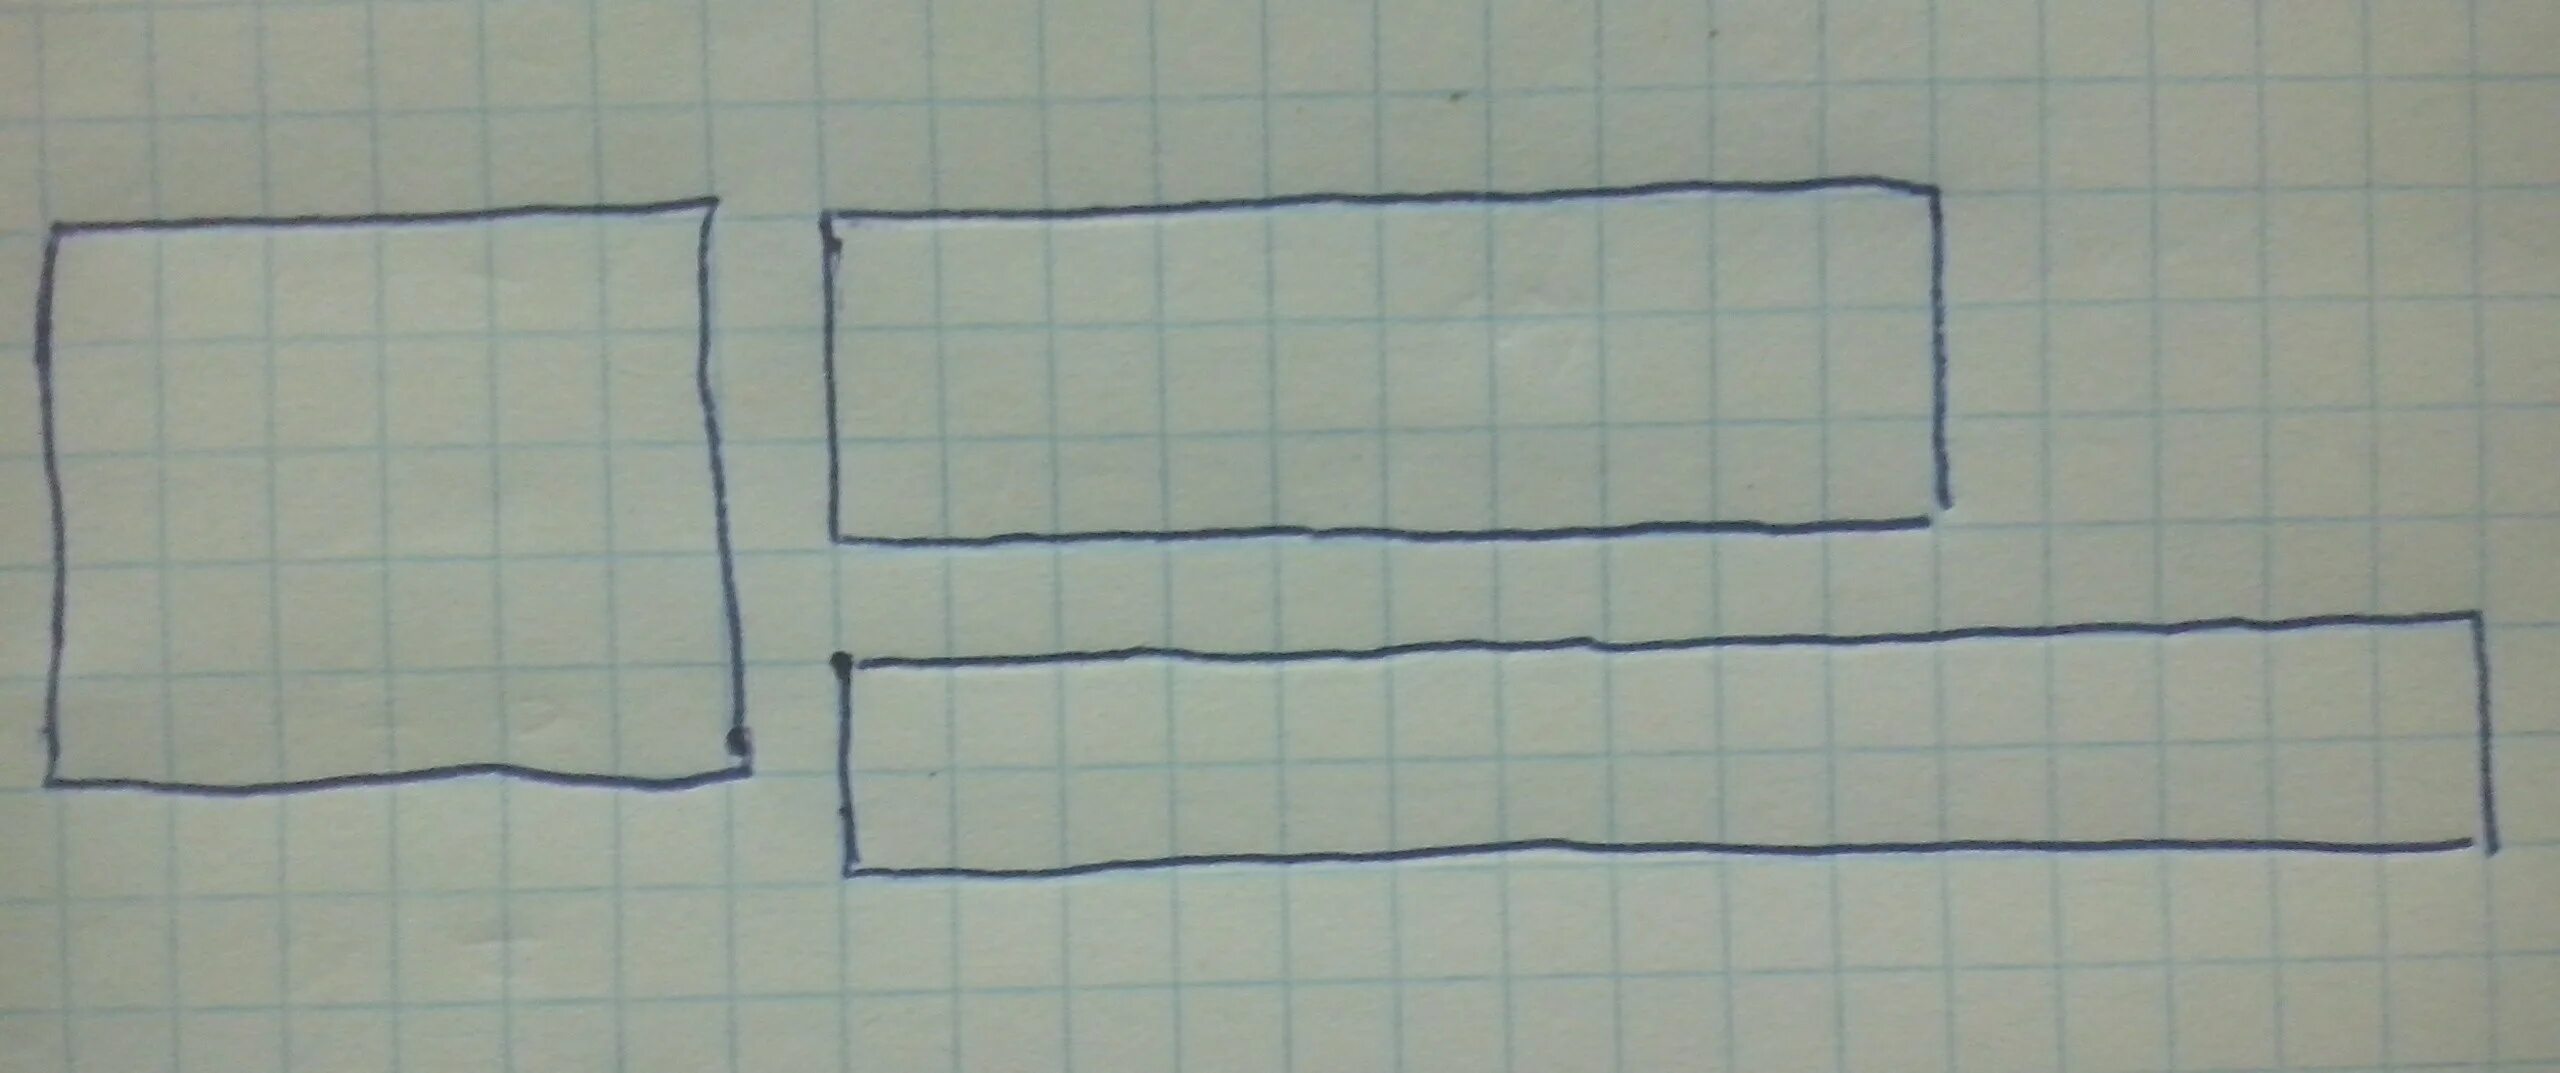 Начертите в тетради такой прямоугольник. Начертите в тетради такой же прямоугольник. Фигура прямоугольник в тетради. Начерти в тетради такой прямоугольник 2 класс.